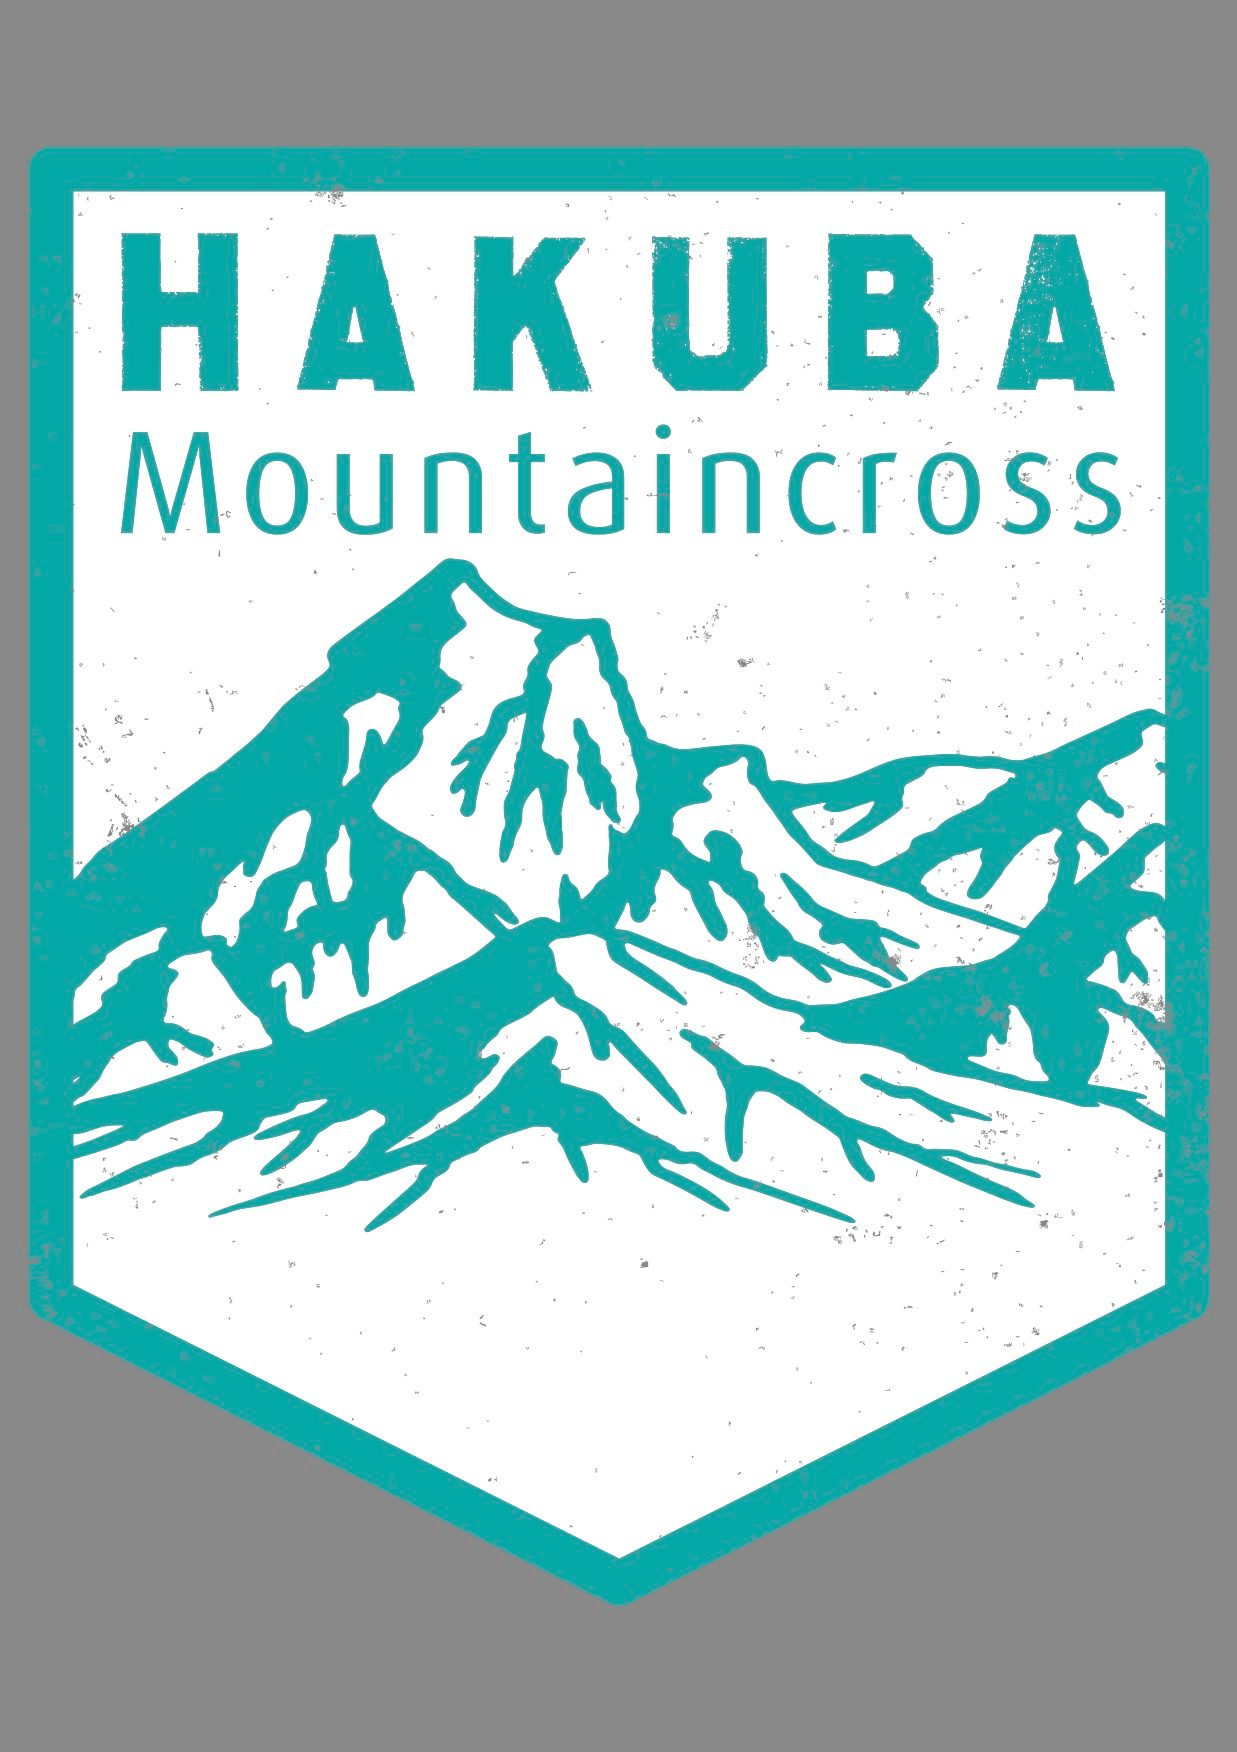 Hakuba Mountaincross